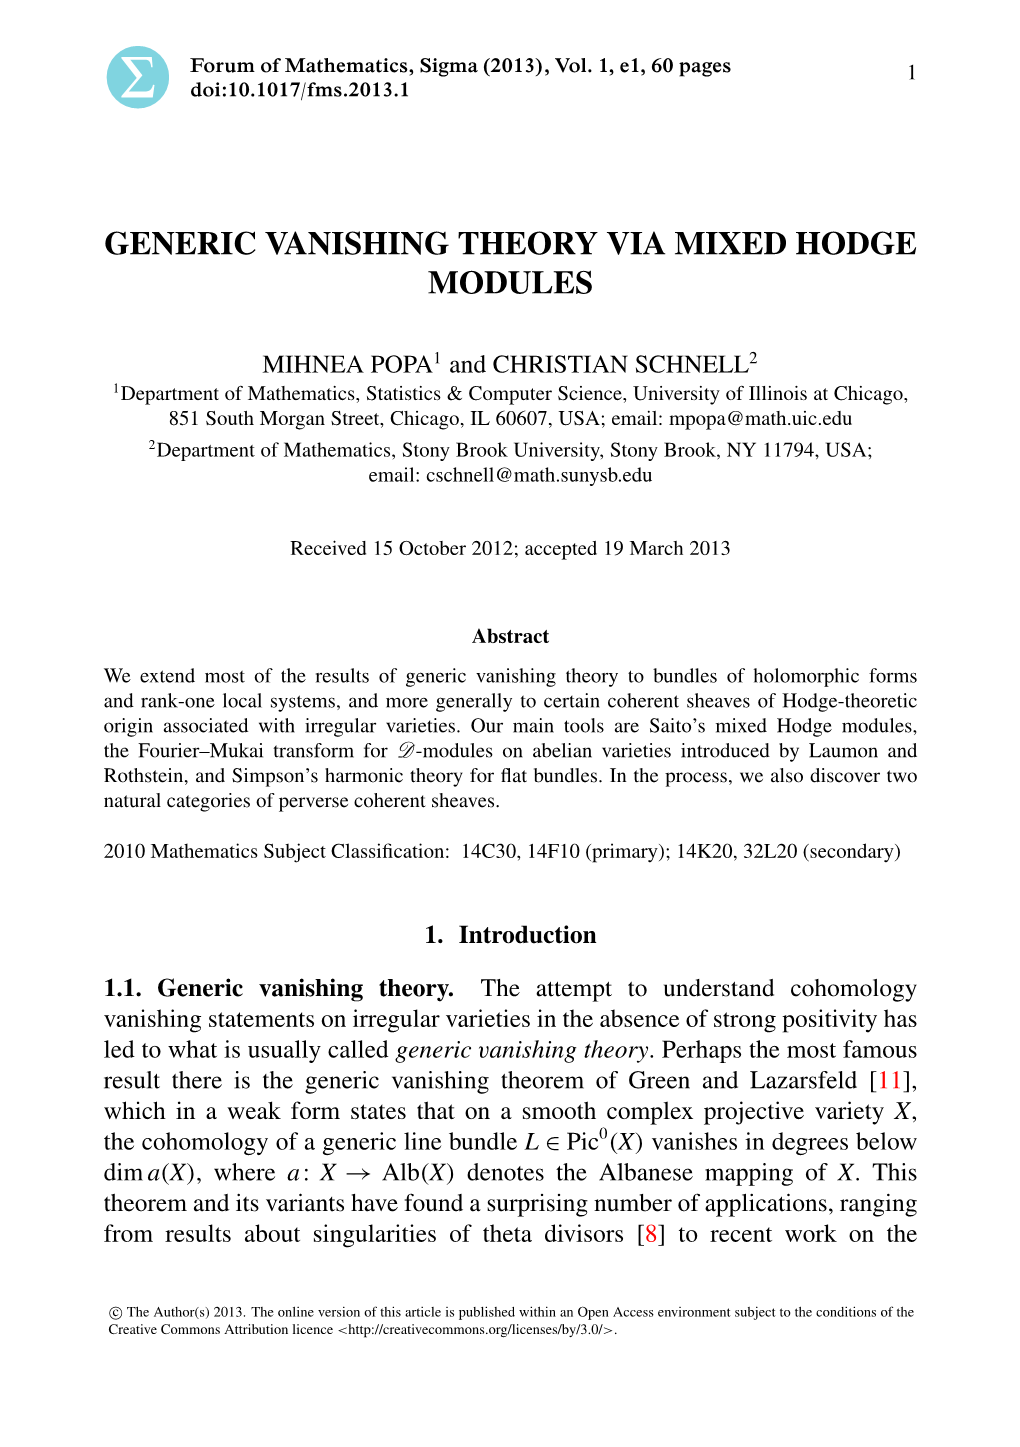 Generic Vanishing Theory Via Mixed Hodge Modules